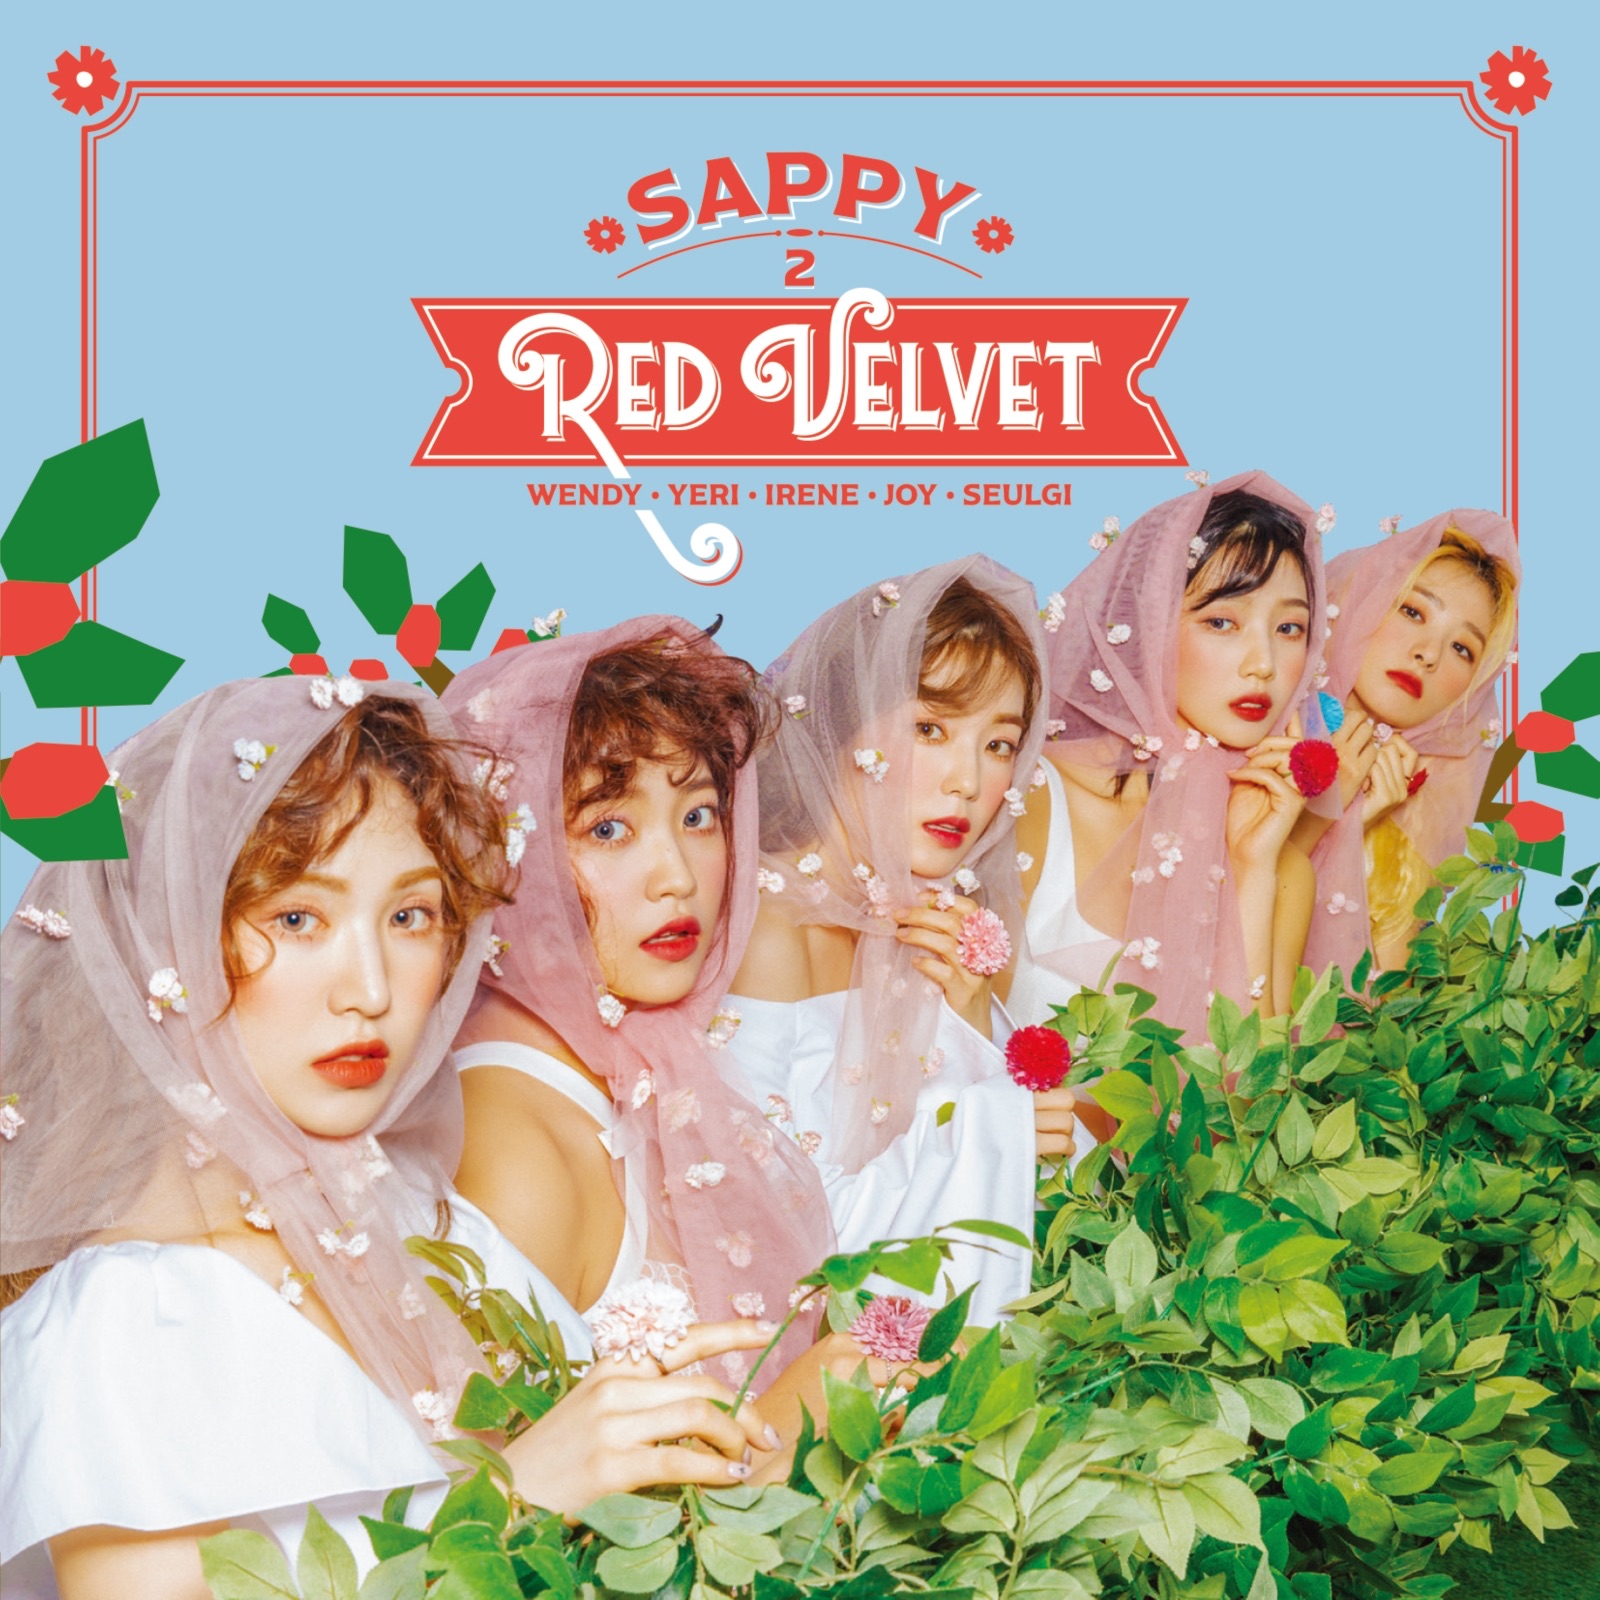 Red Velvet Swimming Pool cover artwork